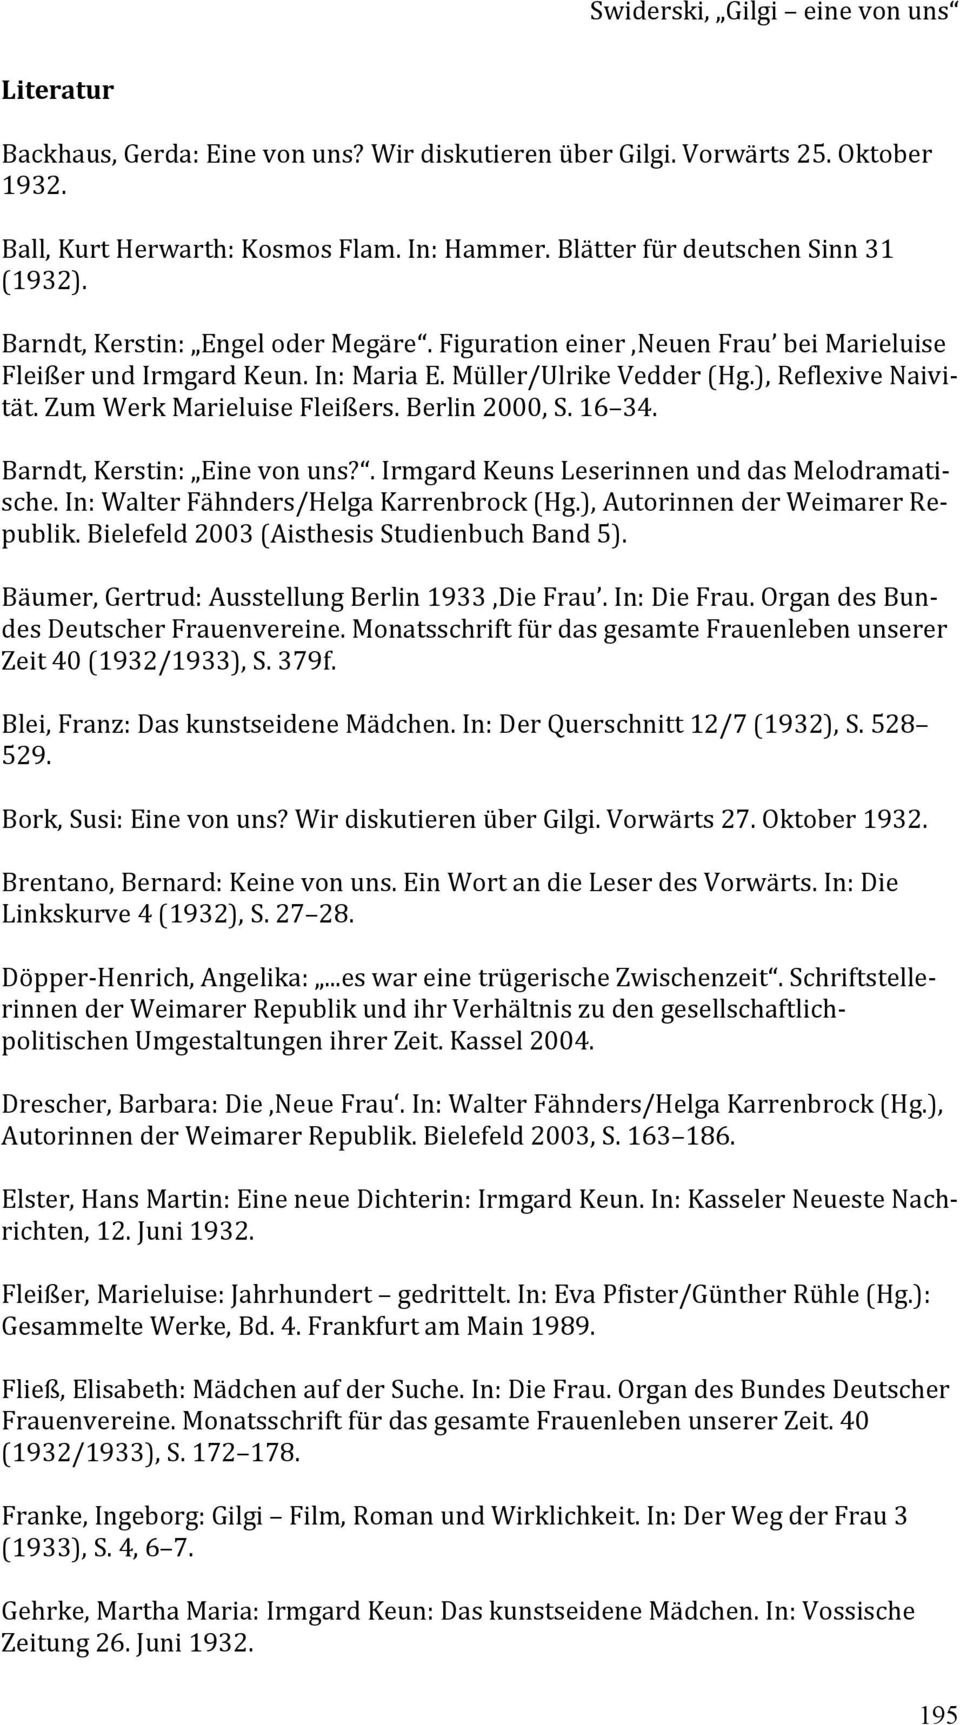 Barndt,Kerstin: Einevonuns?.IrmgardKeunsLeserinnenunddasMelodramatische.In:WalterFähnders/HelgaKarrenbrock(Hg.),AutorinnenderWeimarerRepublik.Bielefeld2003(AisthesisStudienbuchBand5).